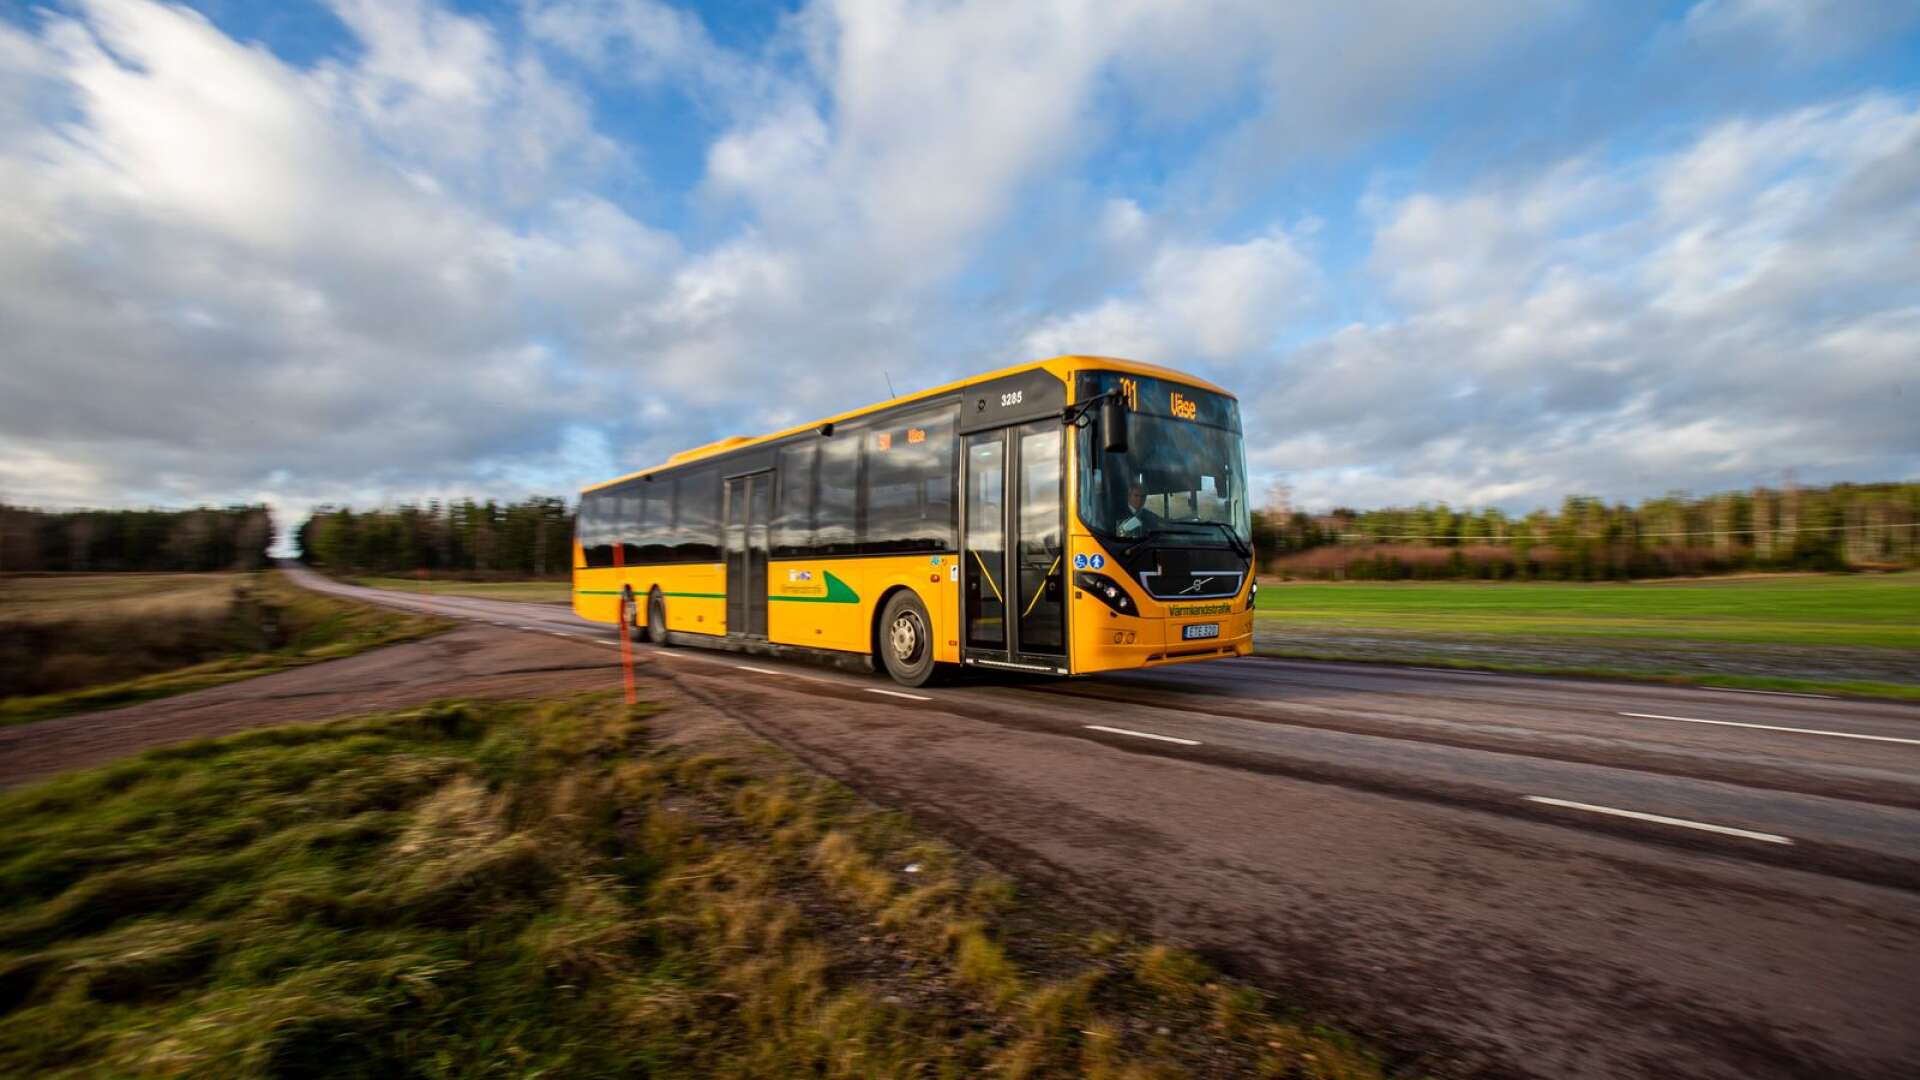 En förbättrad kollektivtrafik med sänkta biljettpriser ger människor i Värmland råd och möjlighet att ta sig till jobbet utan att samtidigt tvingas bidra till förödande utsläpp, skriver insändarskribenten.